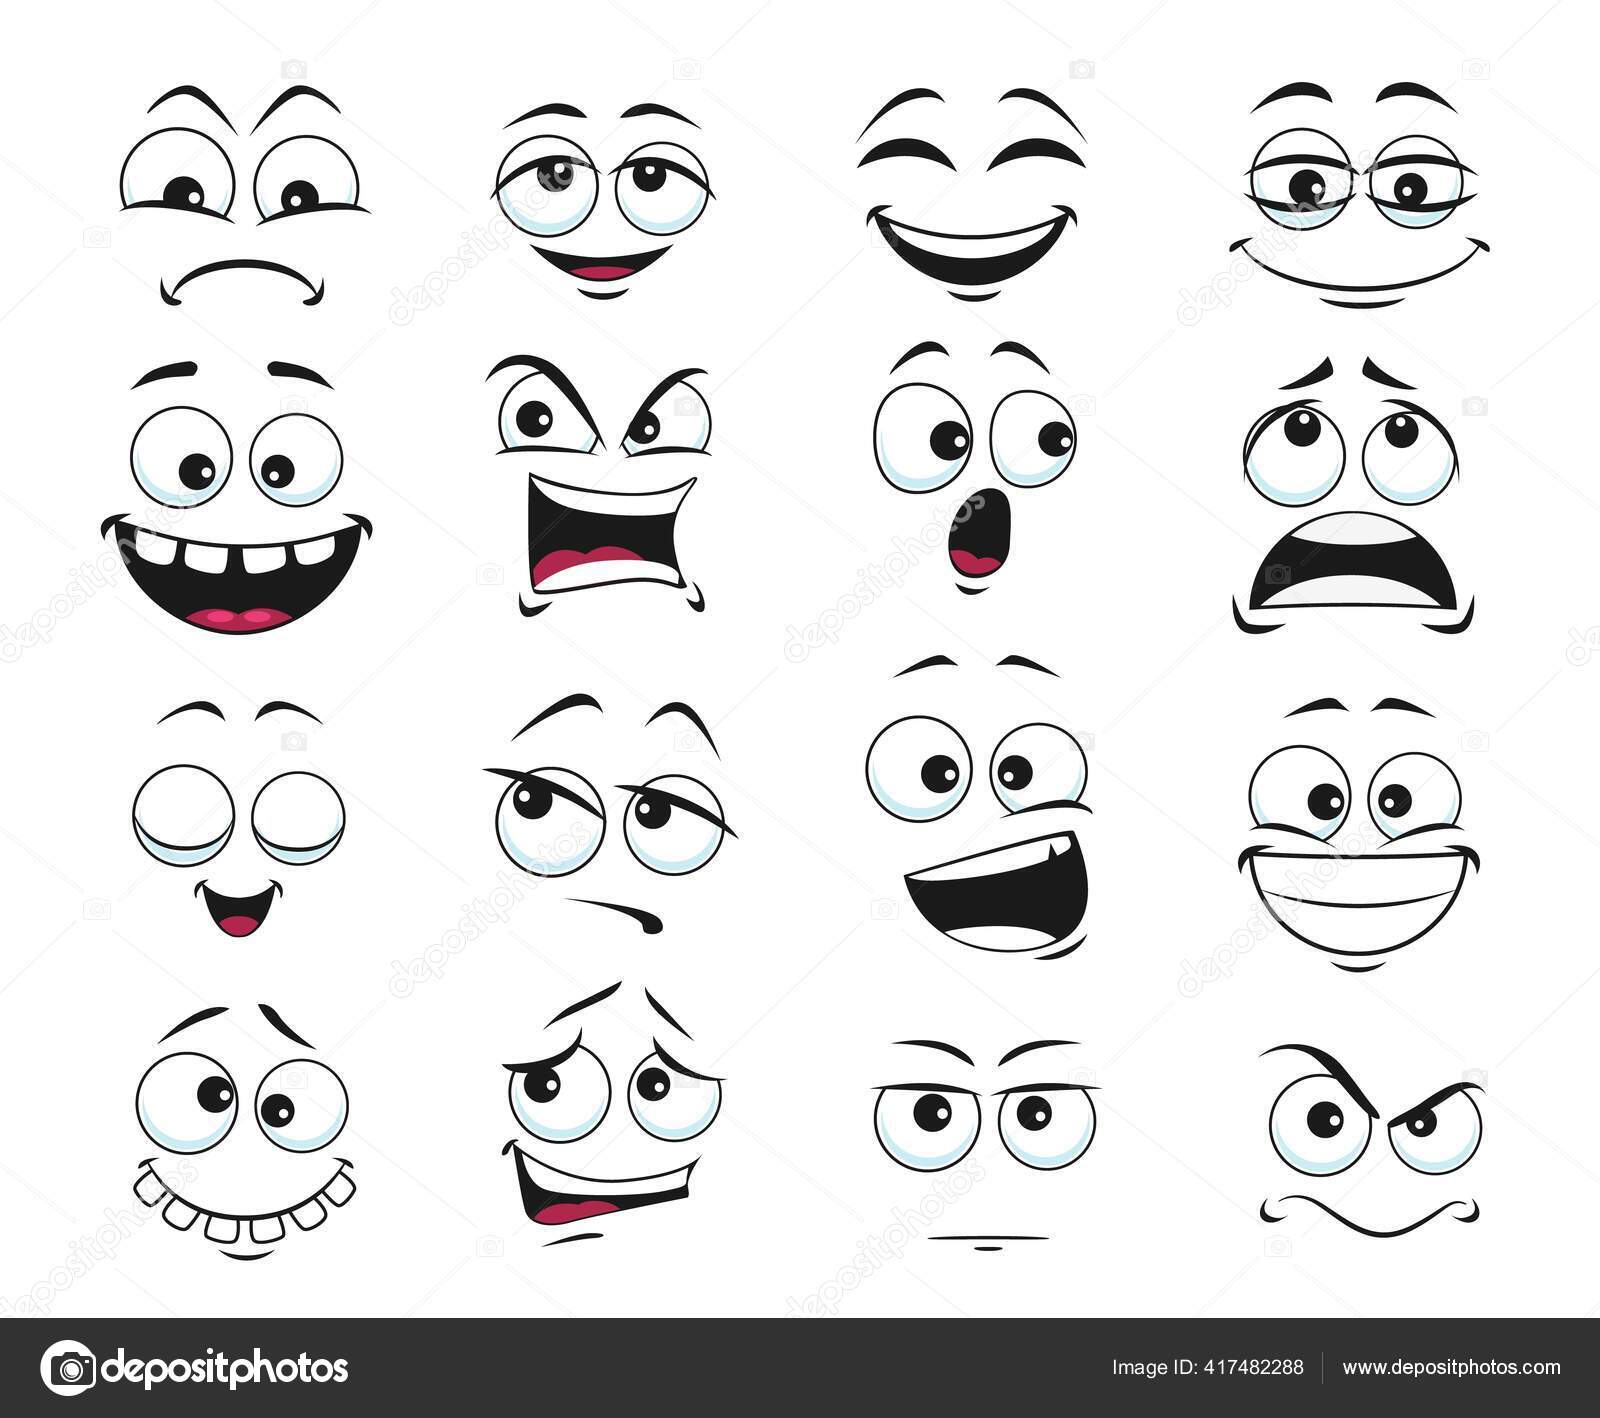 Expressão de riso no estilo cômico cara de desenho animado feliz